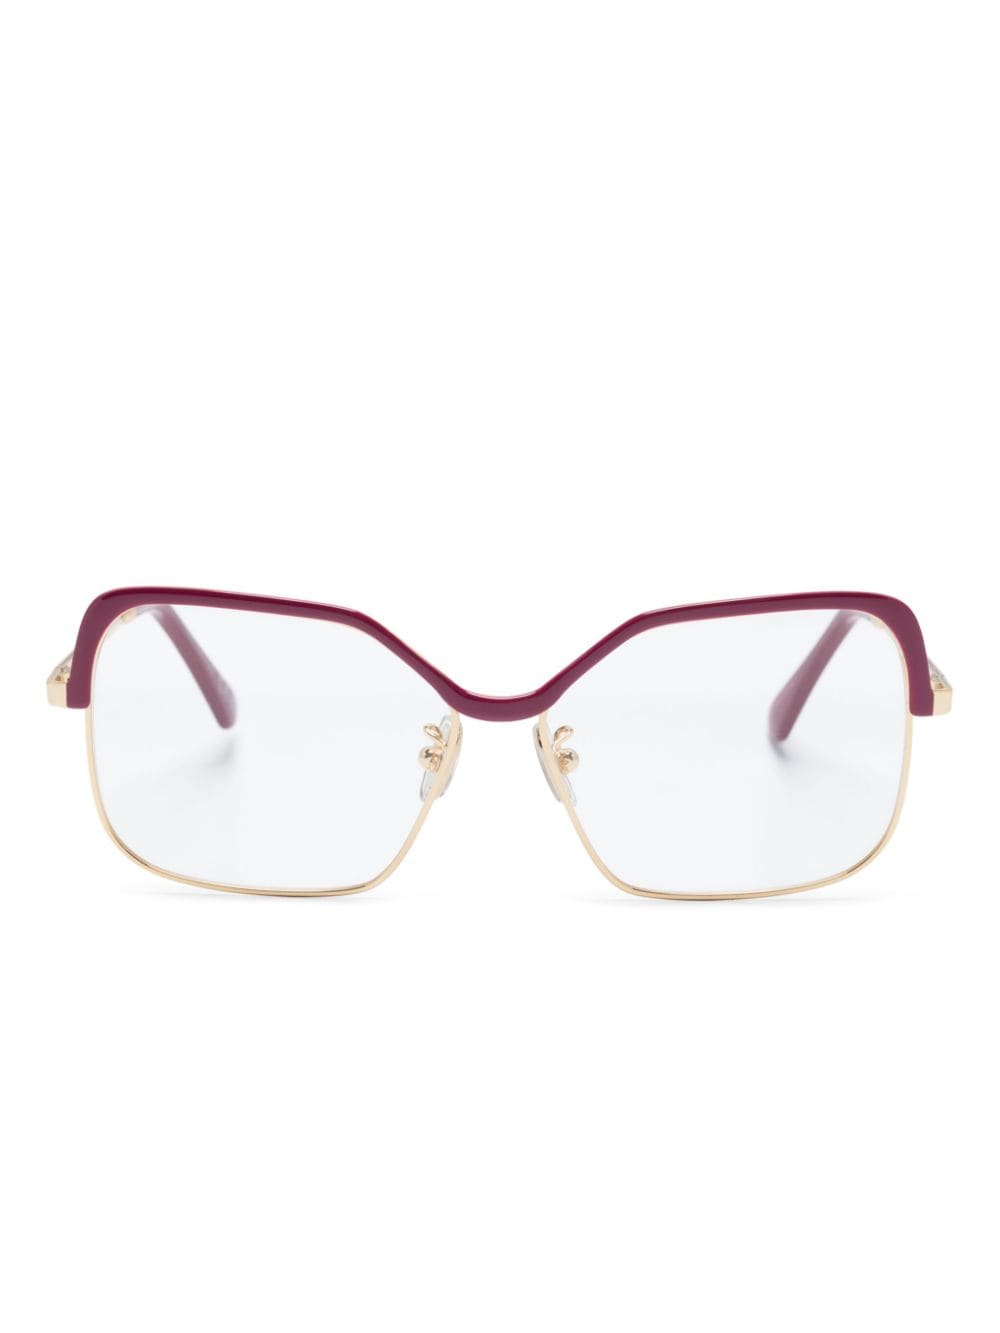 Marni Eyewear Brille mit eckigem Gestell - Rot von Marni Eyewear